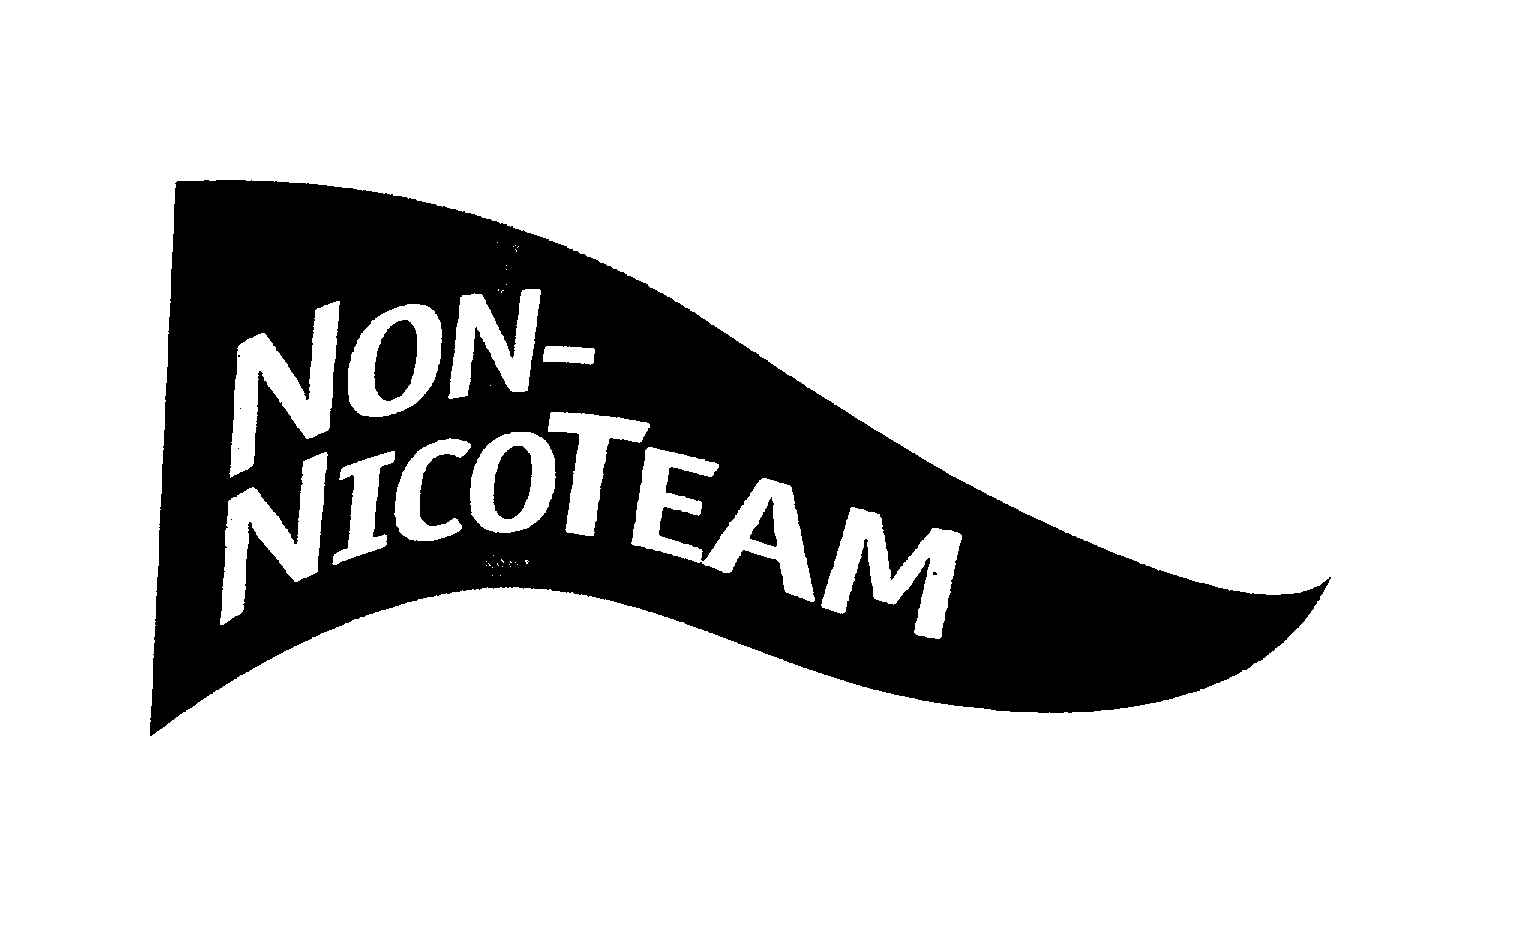  NON-NICOTEAM